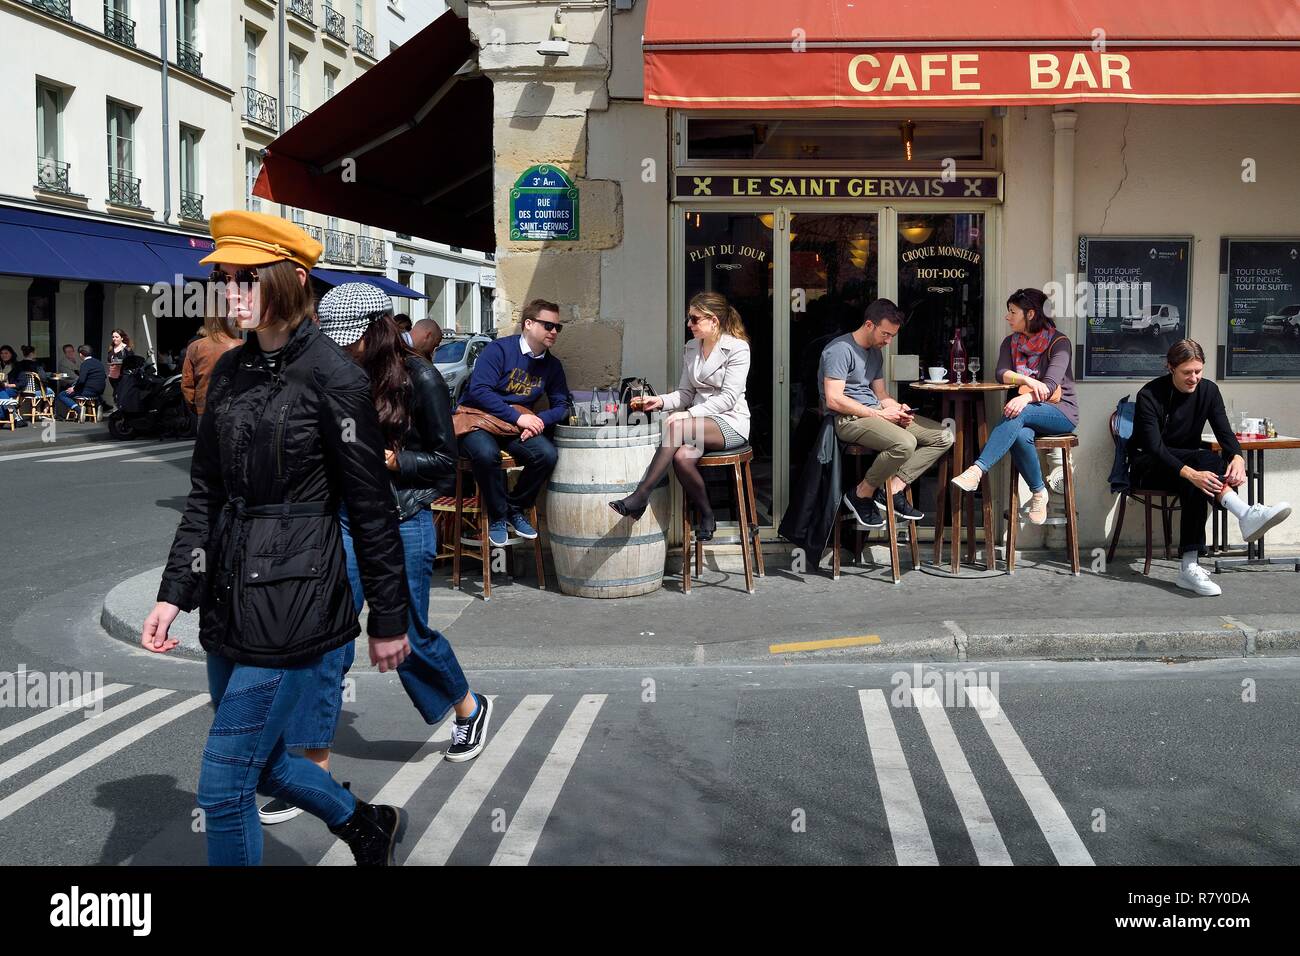 France, Paris, Cafe bar restaurant le Saint Gervais rue vieille du temple  Stock Photo - Alamy